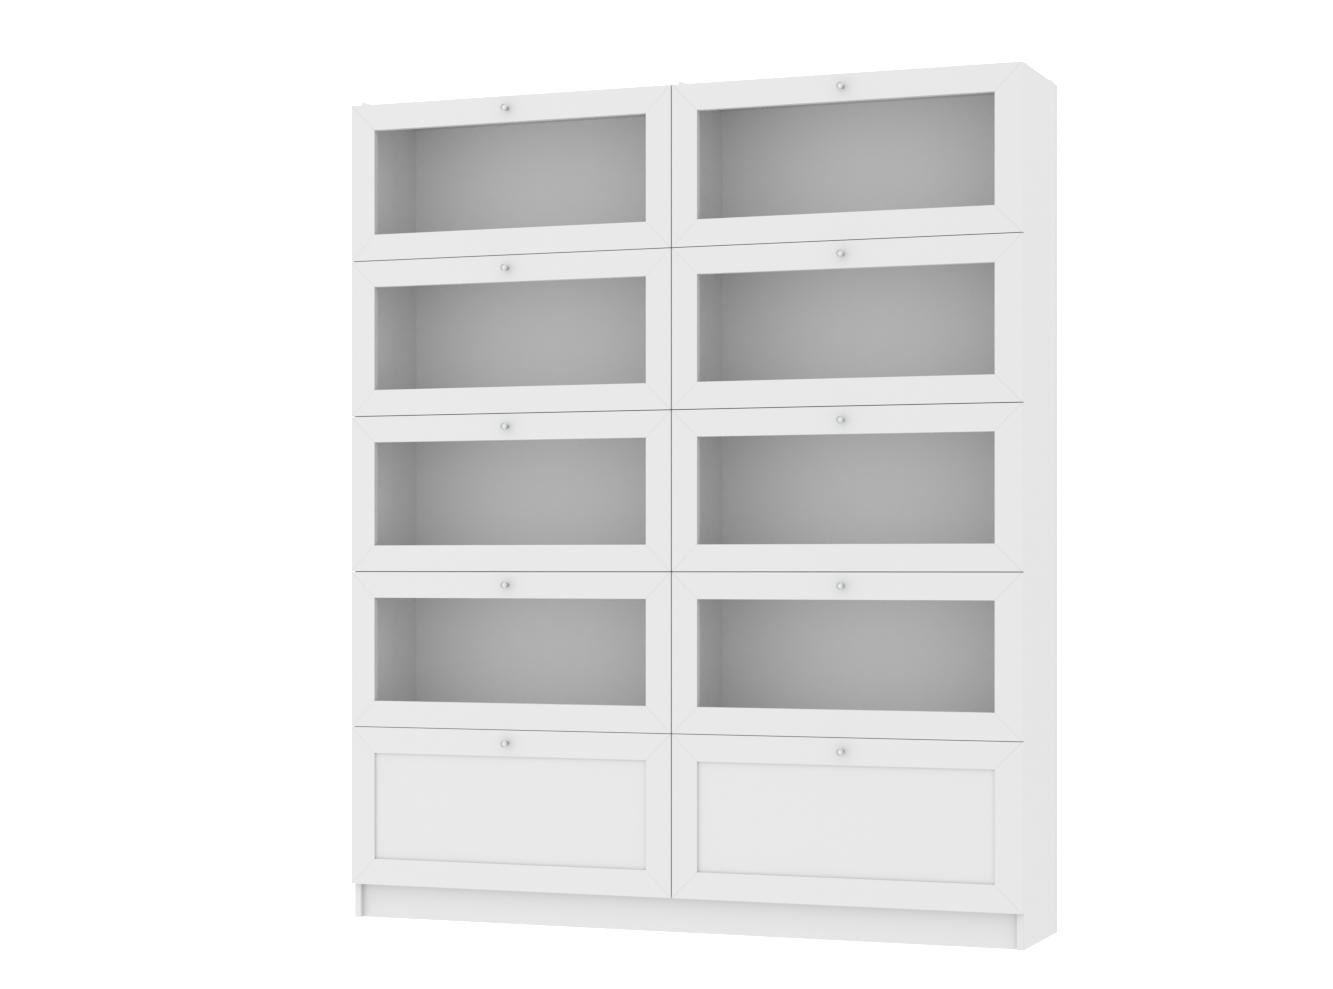 Изображение товара Книжный шкаф Билли 376 white ИКЕА (IKEA), 160x30x190 см на сайте adeta.ru